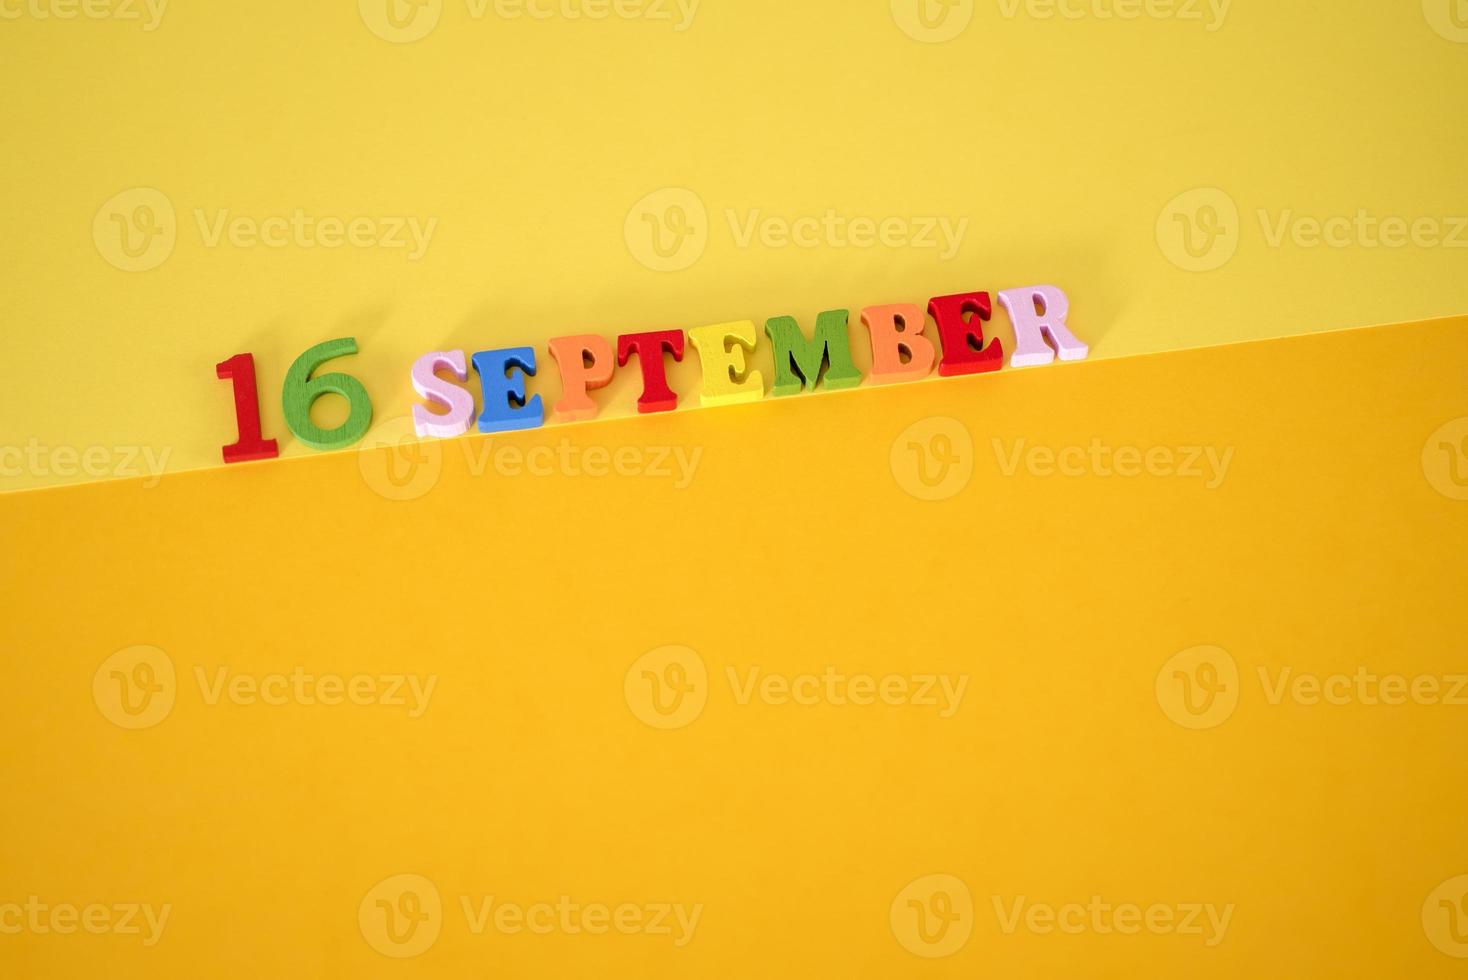 16 september på en gul, pappersbakgrund med plats för text. foto